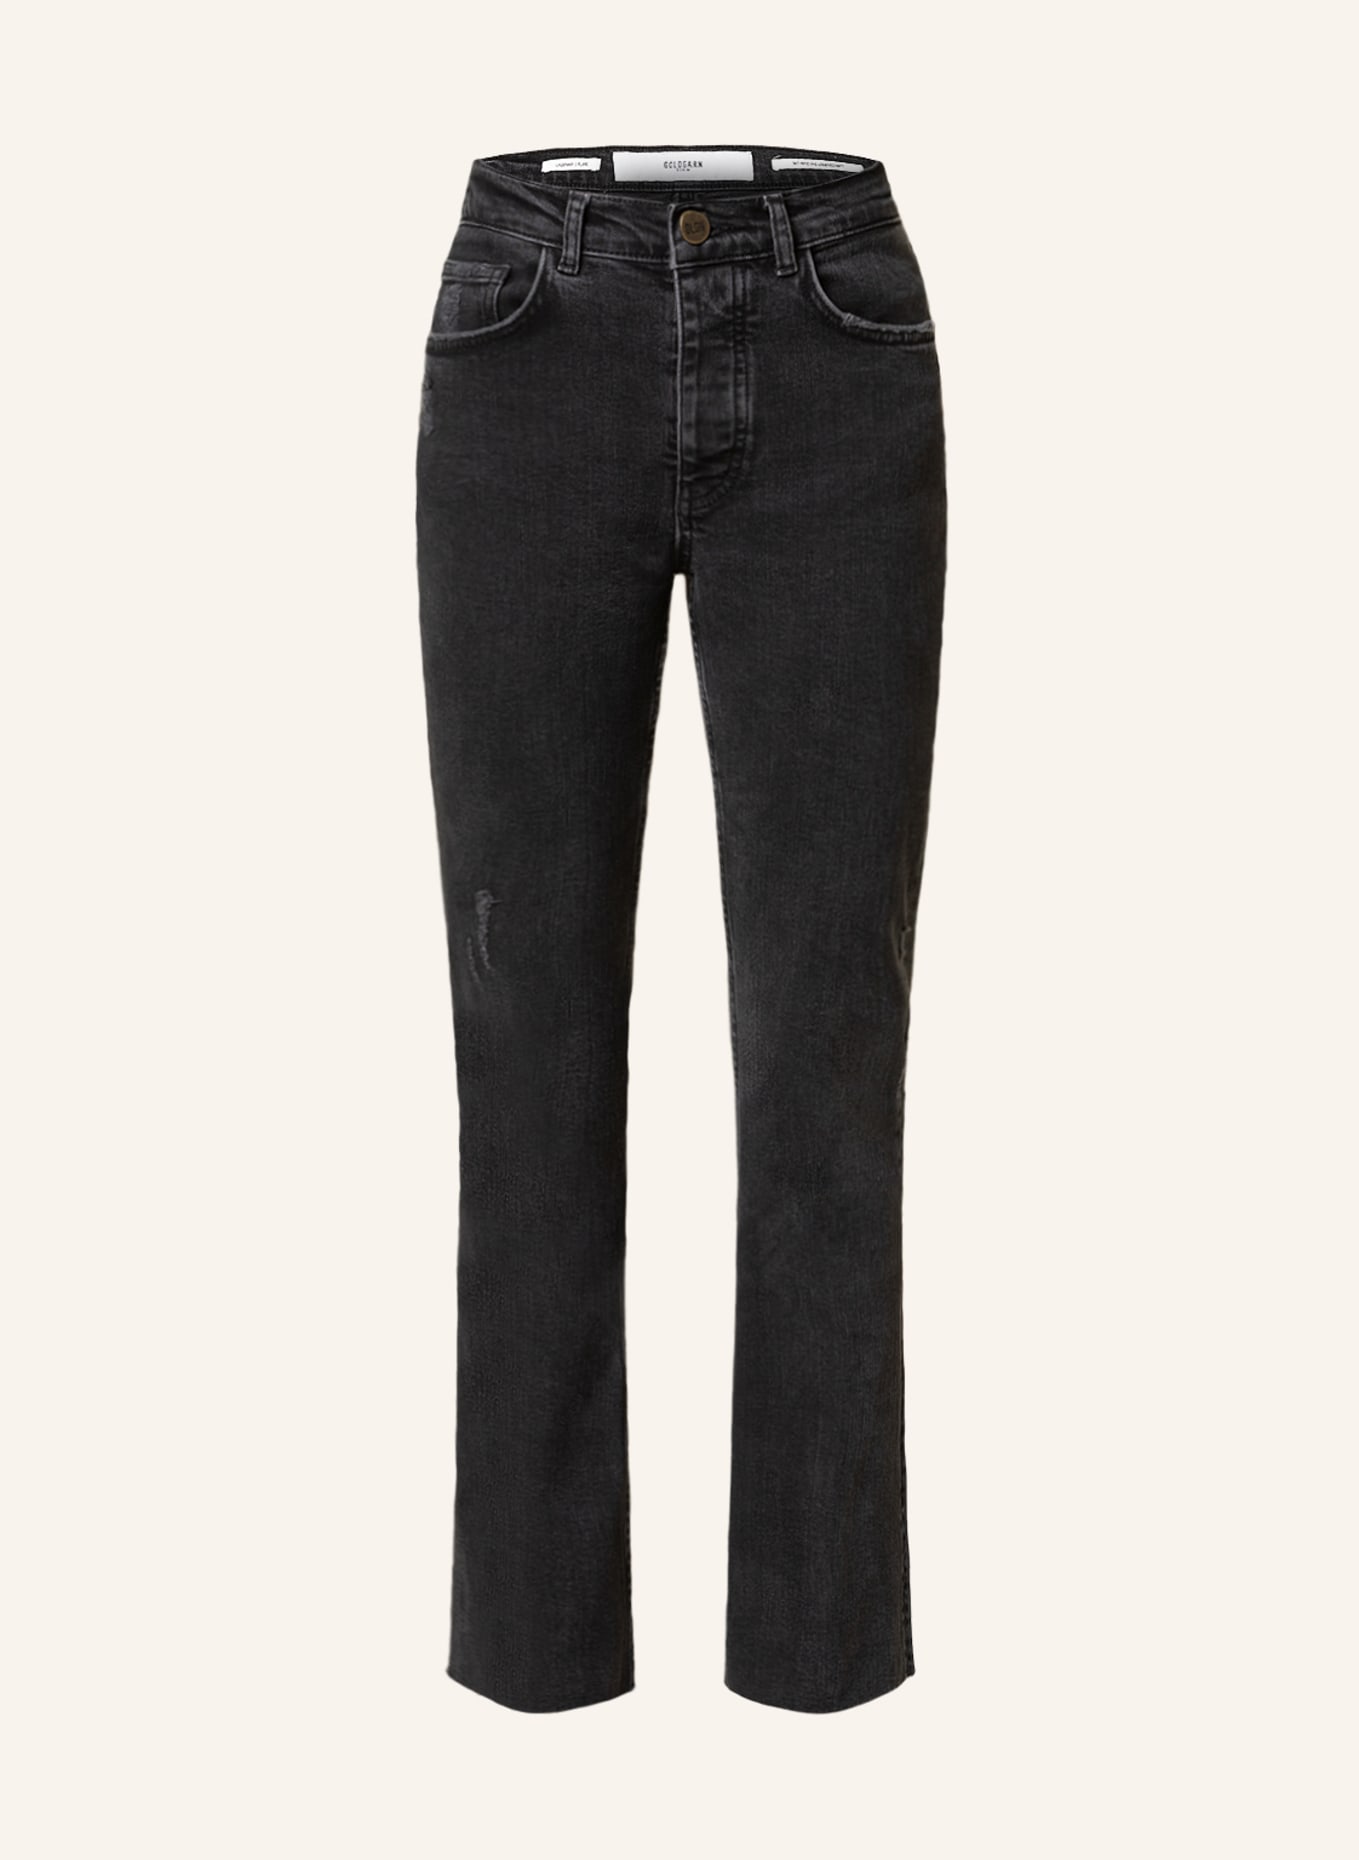 GOLDGARN DENIM Flared Jeans LINDENHOF, Farbe: 1110  vintage black (Bild 1)